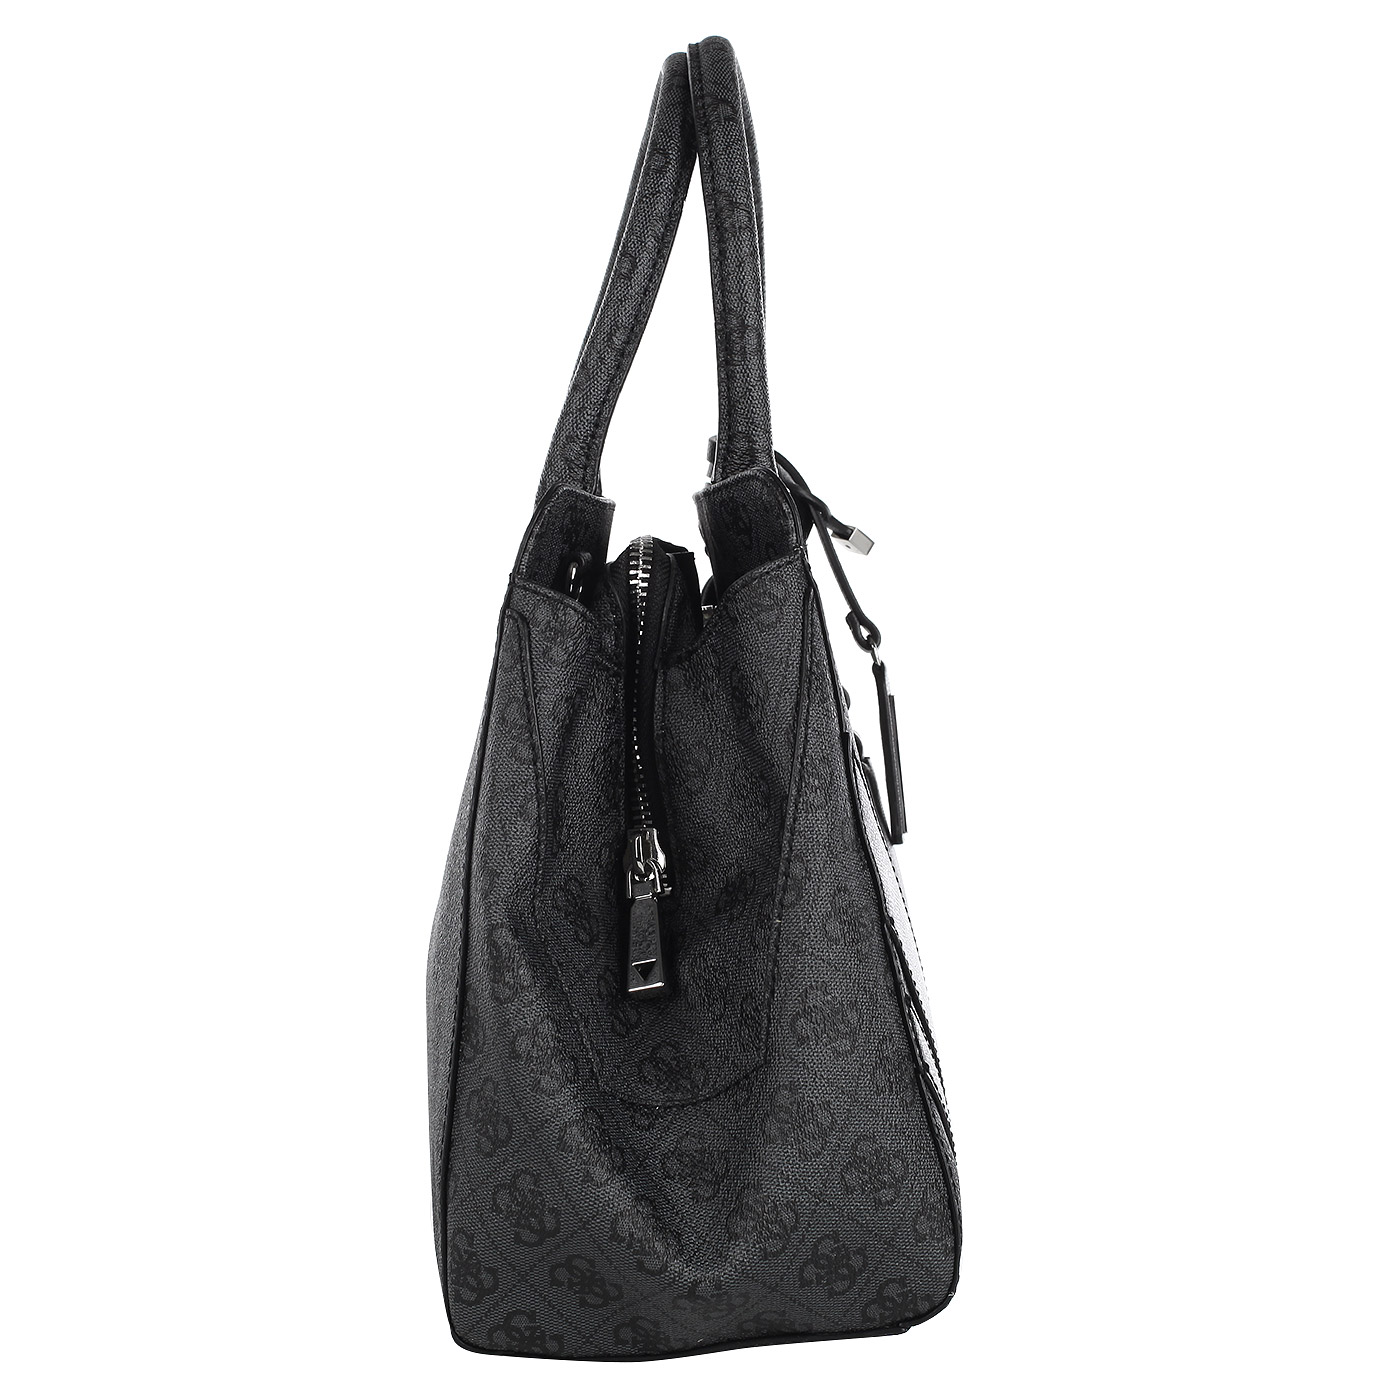 Вместительная женская сумка с короткими ручками и логотипом бренда Guess Slater